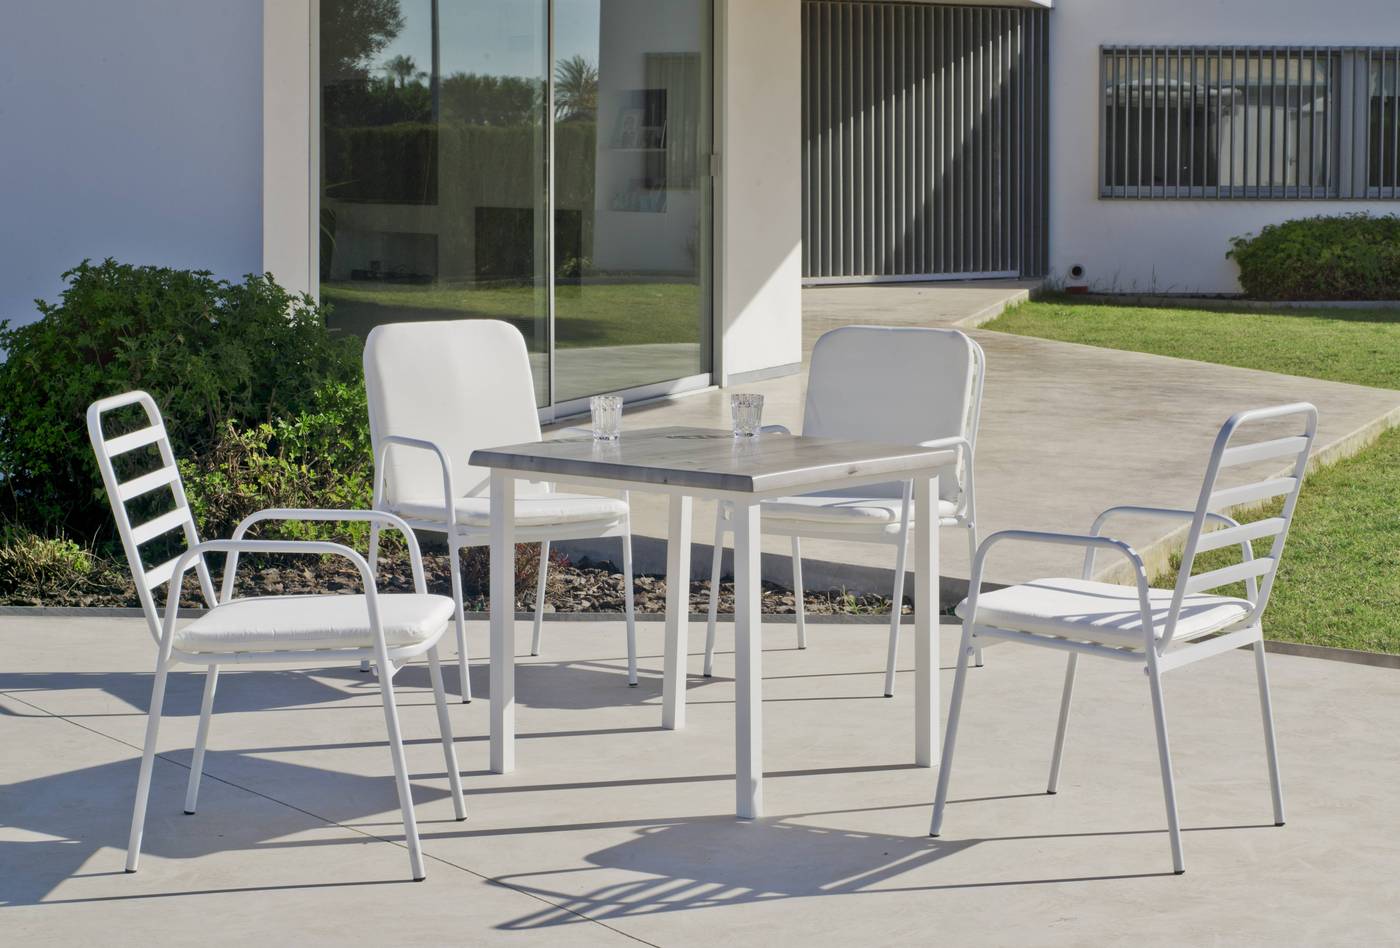 Sillón Aluminio Luxe Maxim - Sillón apilable de aluminio luxe para jardín y terraza. Disponible en color blanco o antracita.